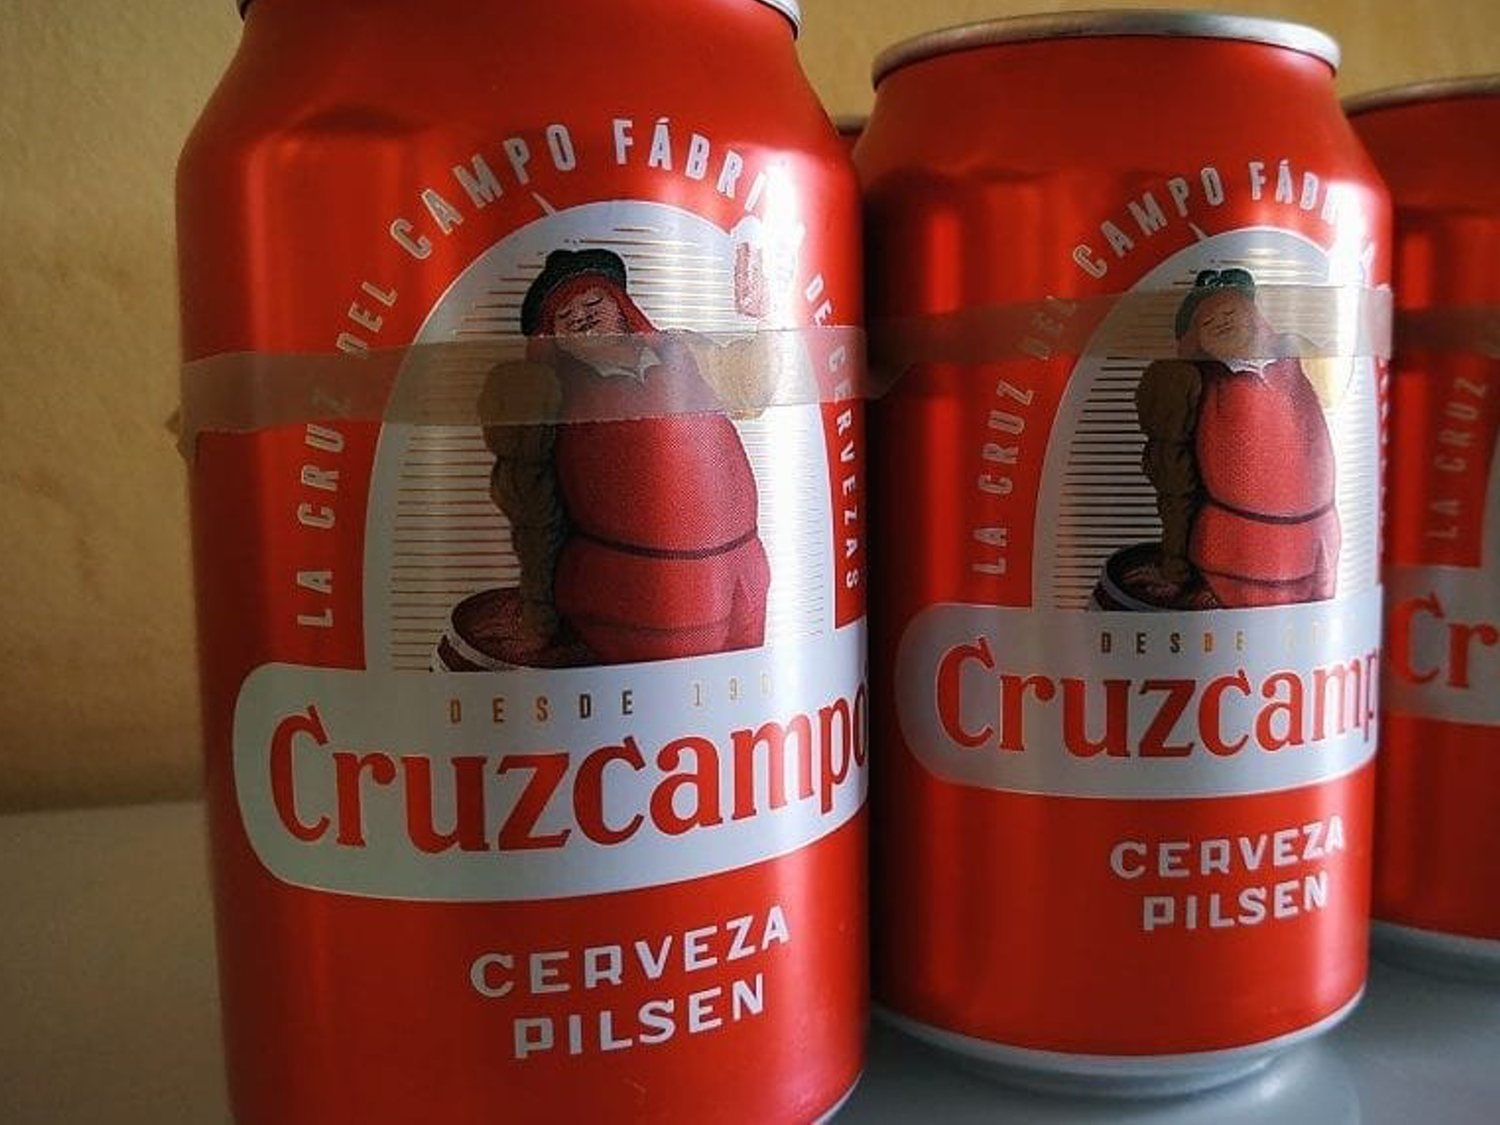 Un prestigioso ranking internacional sitúa a Cruzcampo como la mejor cerveza española